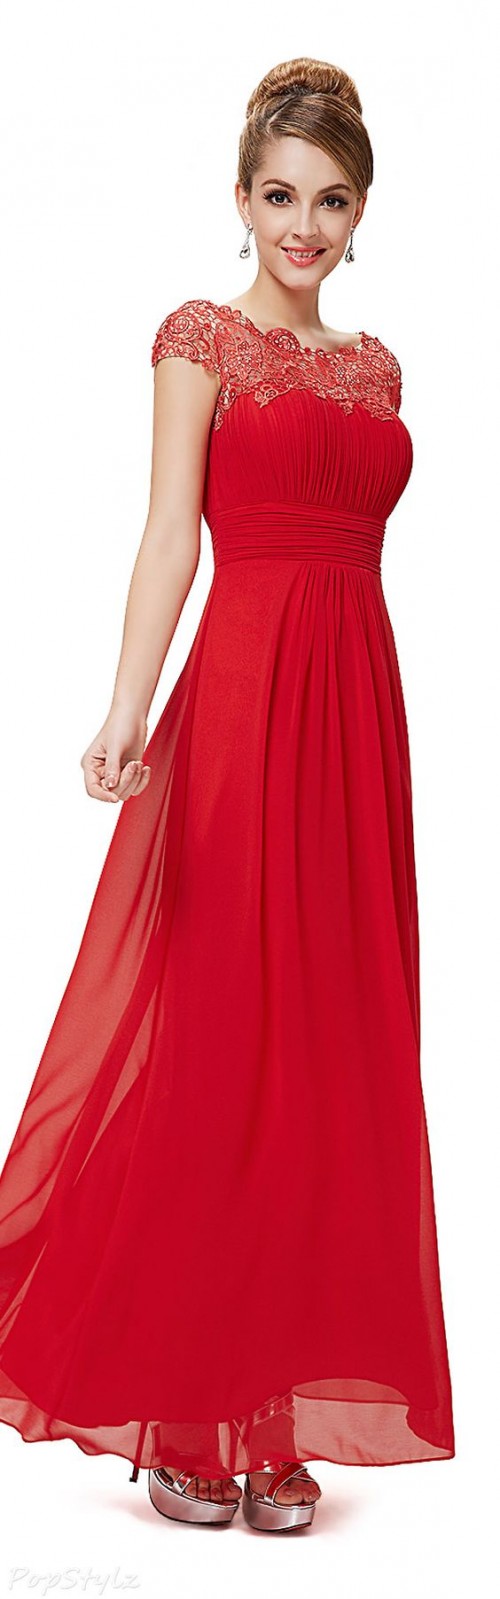 Đầm dạ hội màu đỏ DH-020